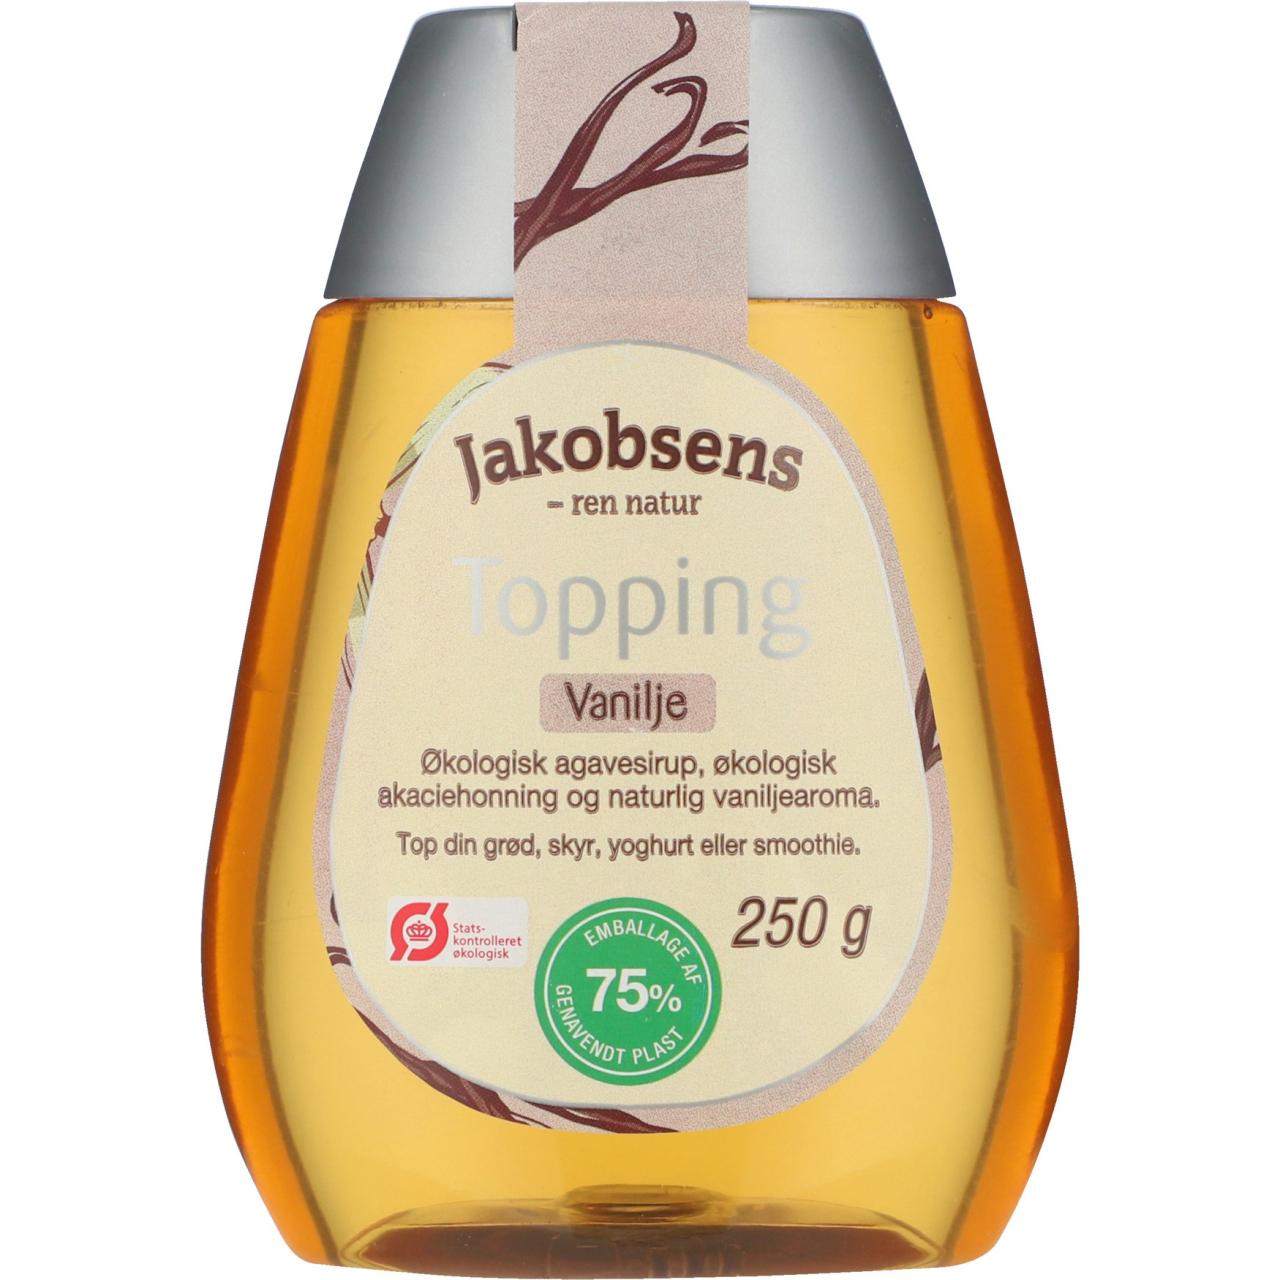 Jakobsens Topping Vanilje Øko 250g